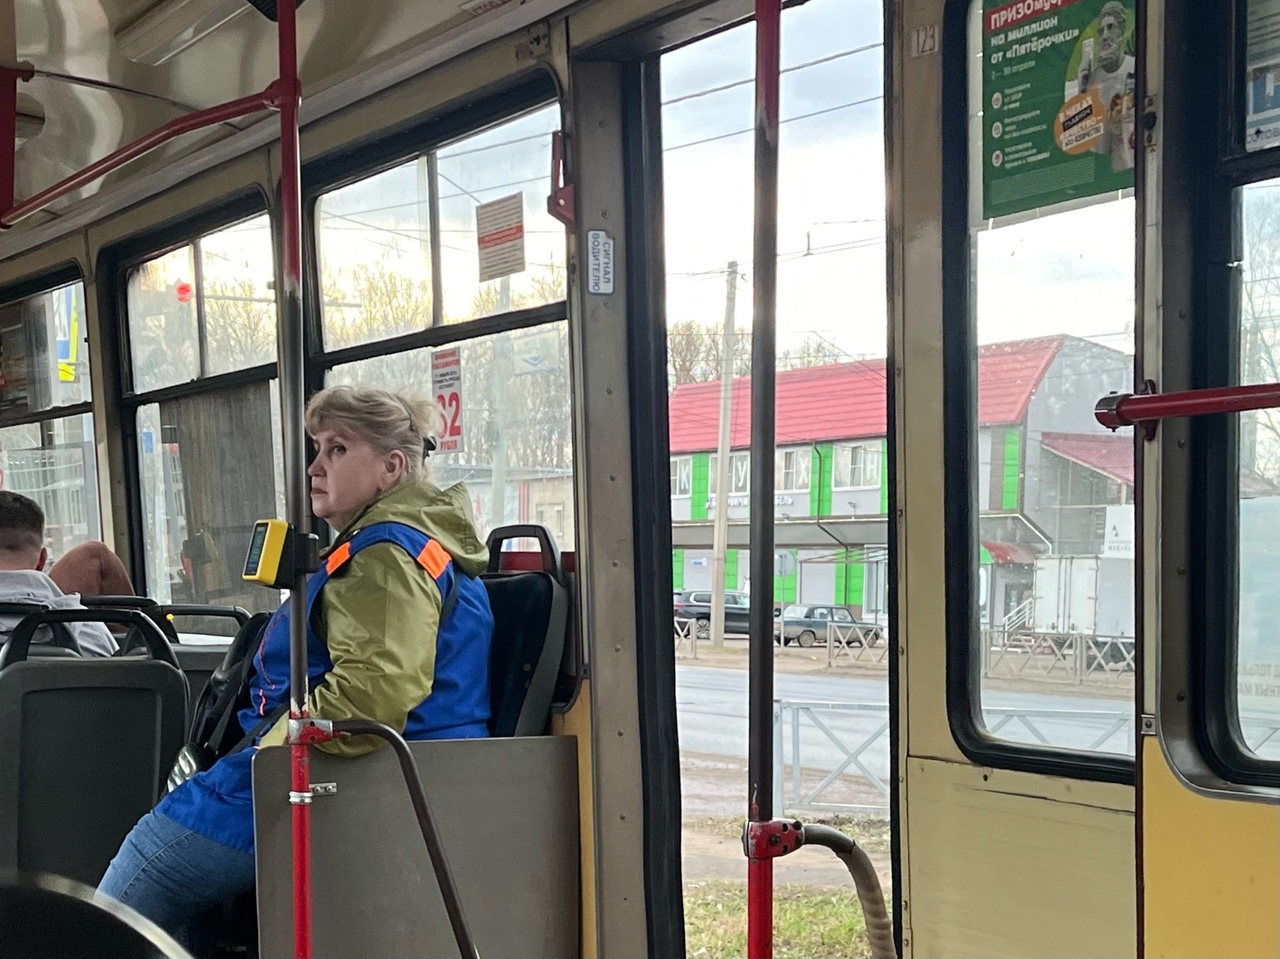 "Трамваи покупаются, а трамвайное депо закрывается": ярославцы переживают за судьбу трамваев